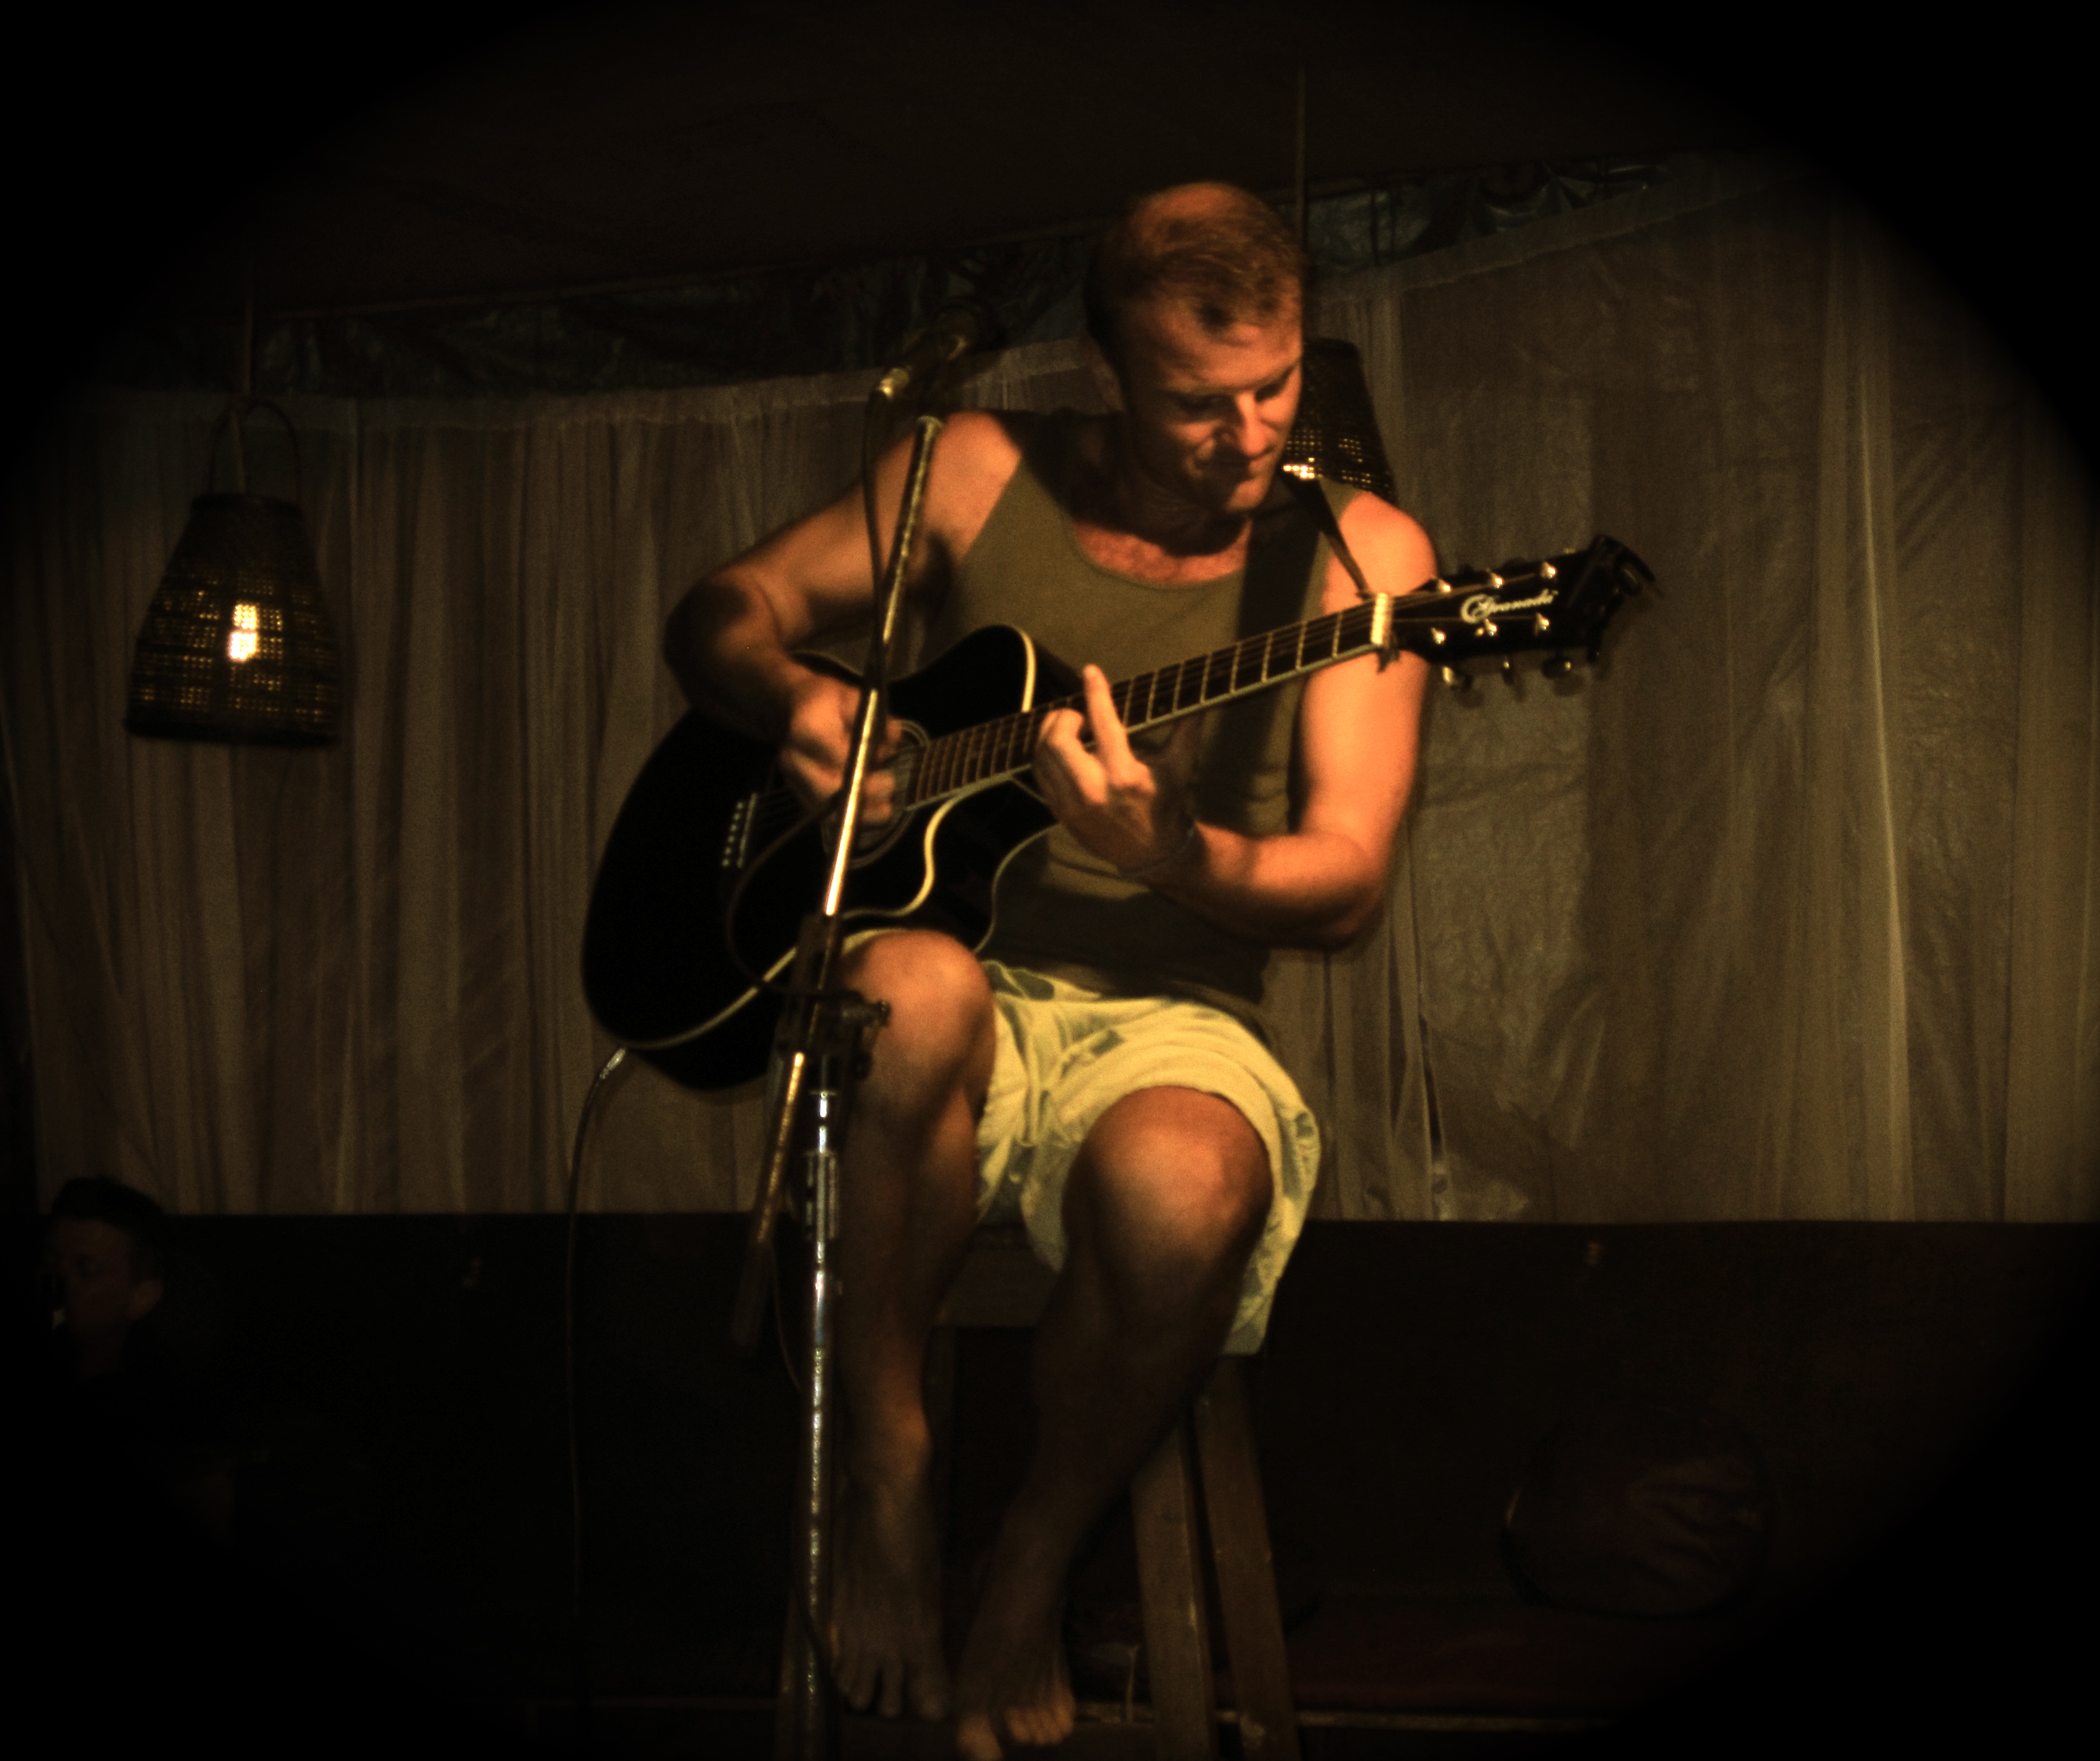 Matt playing guitar dark background